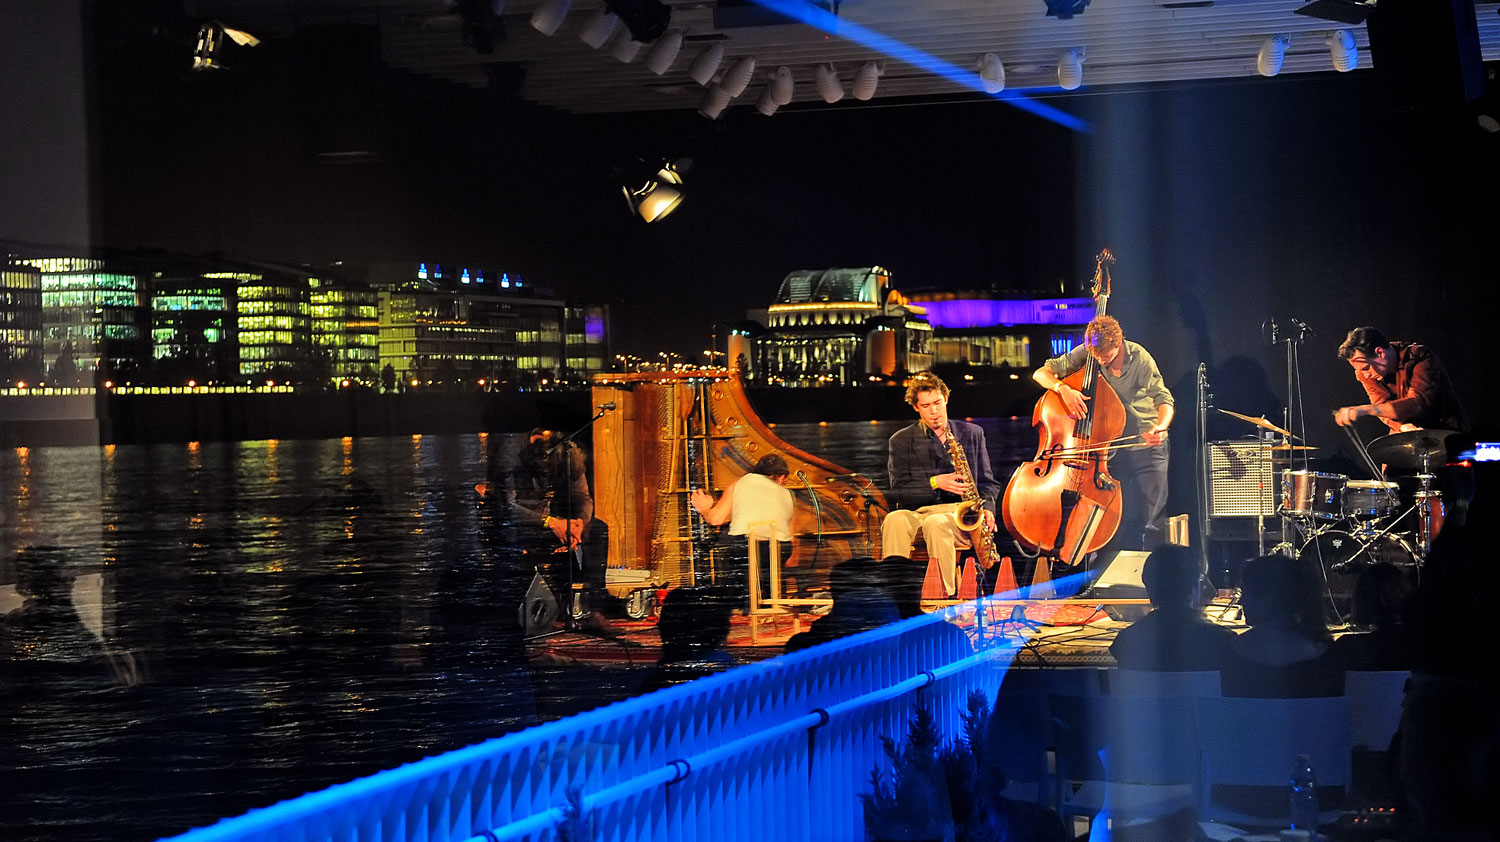 Független színházi zenekarok és hangkeltők első fesztiválja a Duna felett